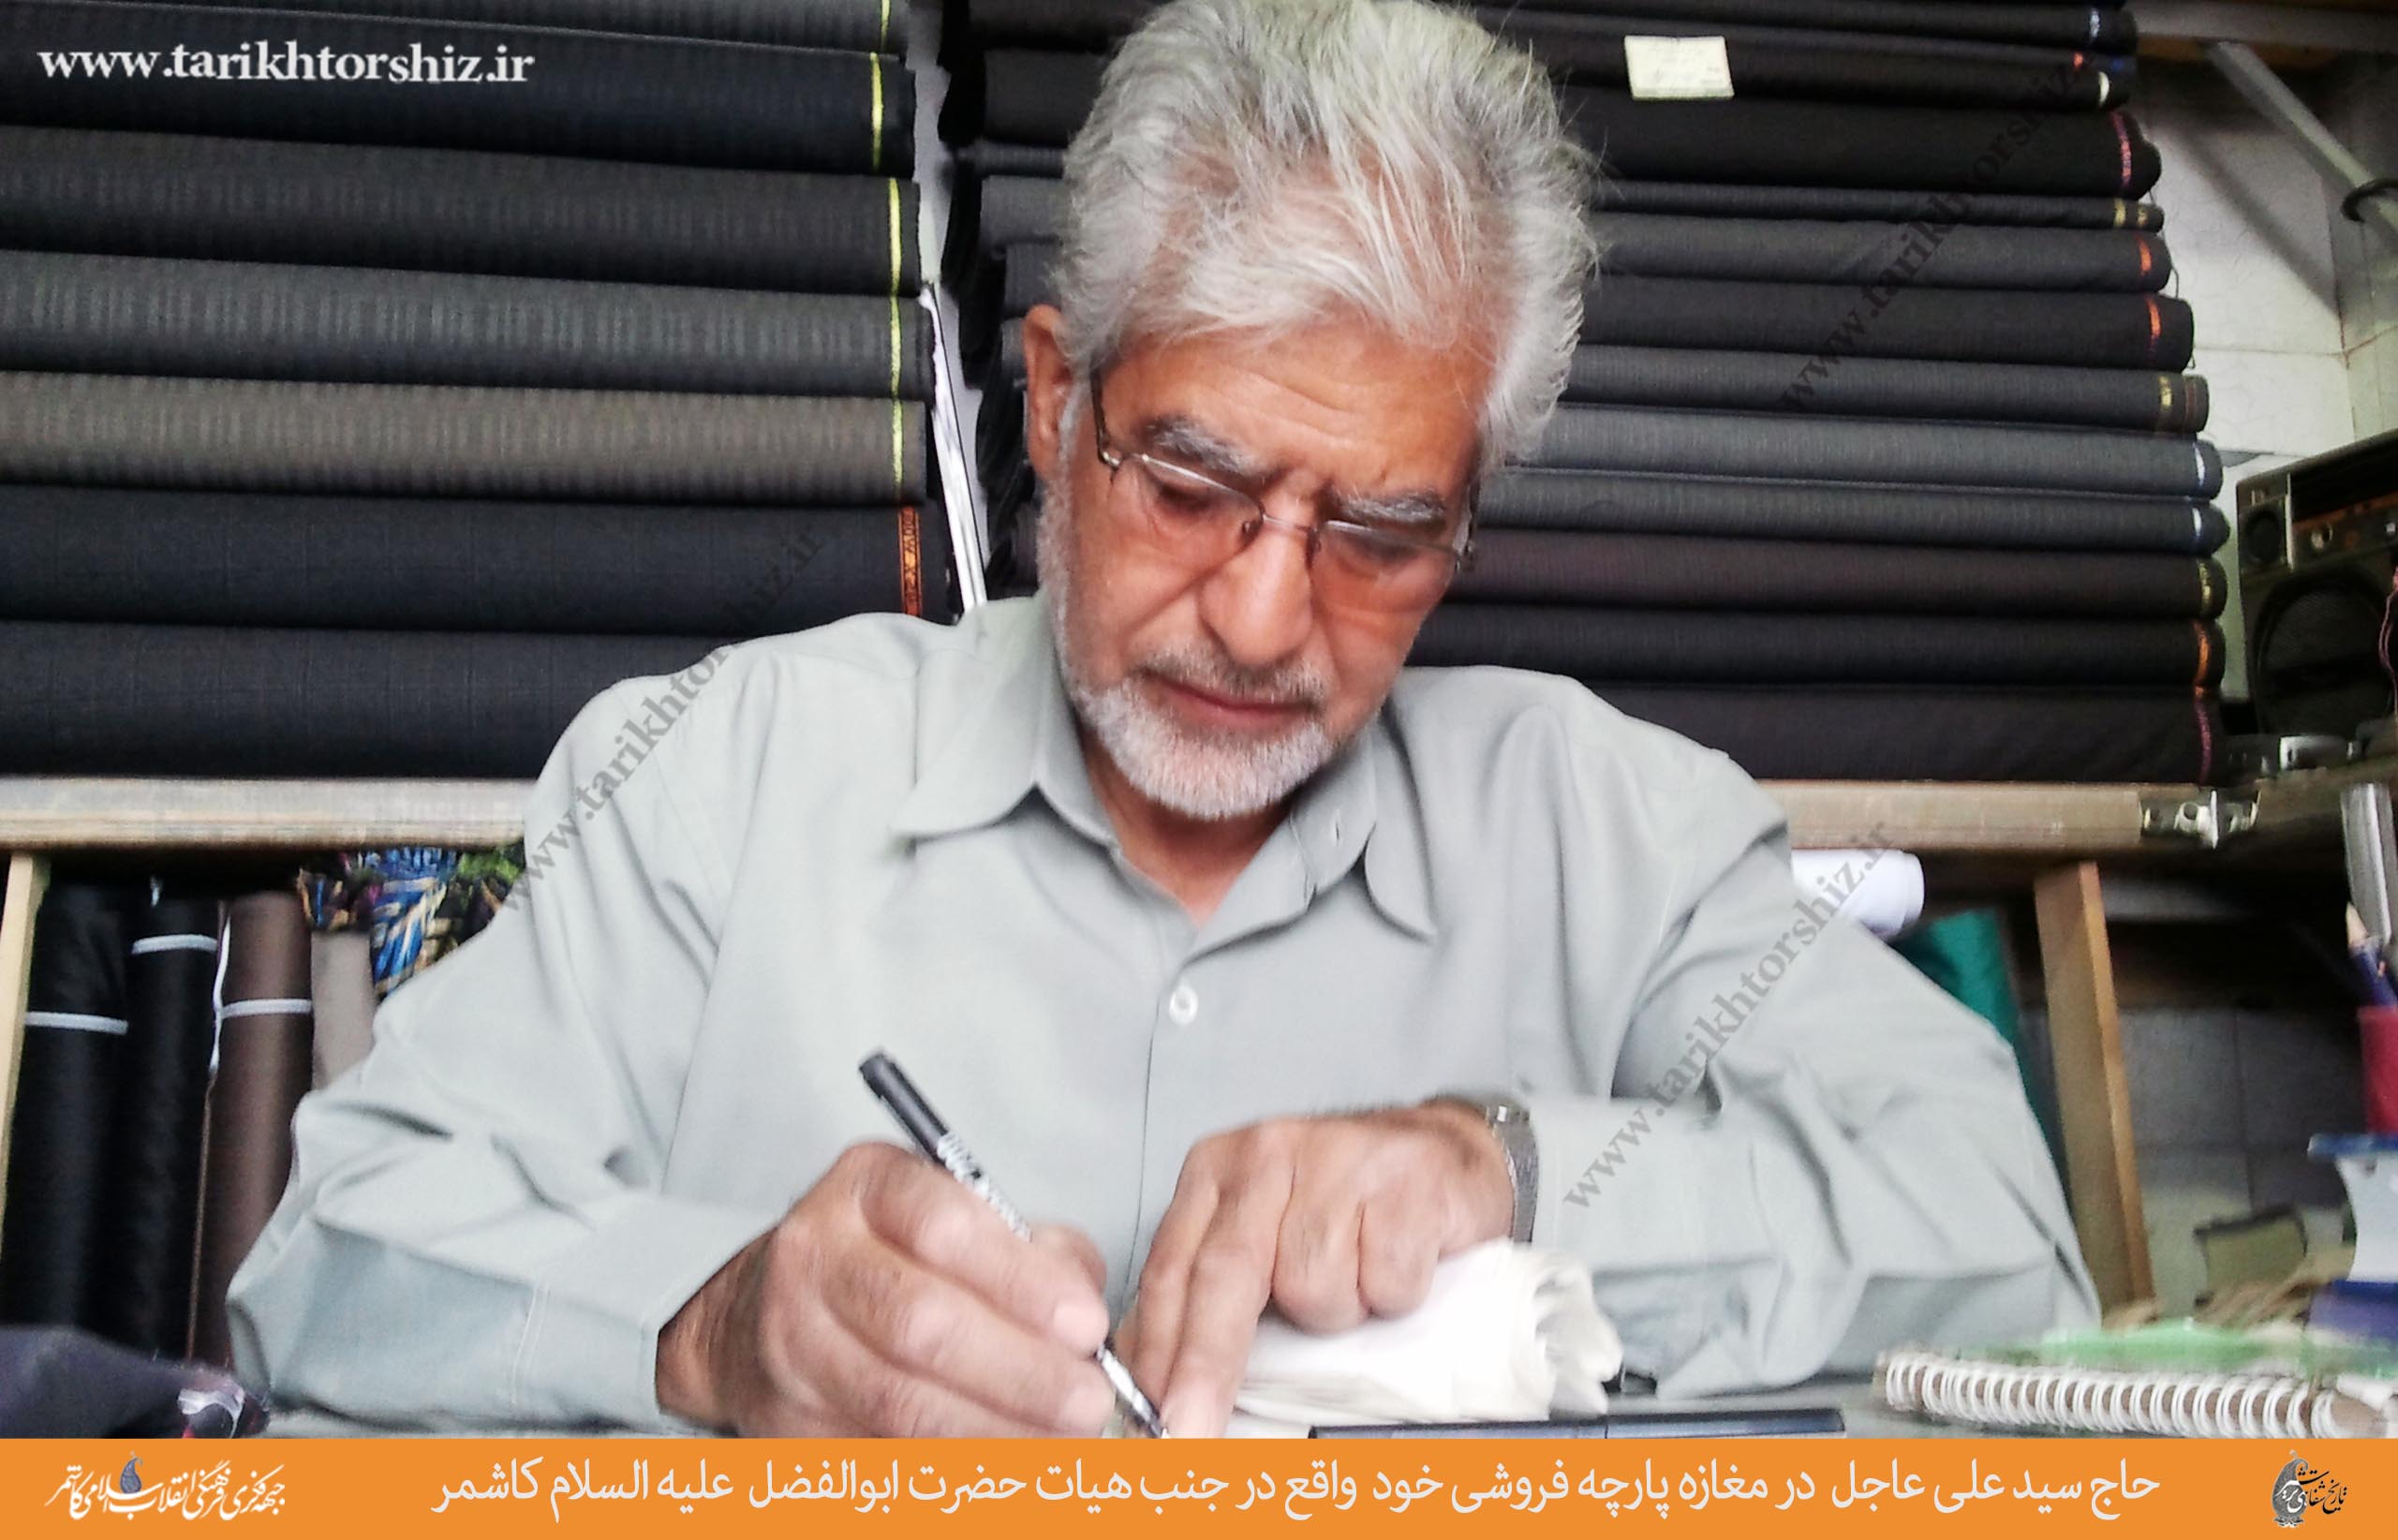 حاج سید علی عاجل  در مغازه پارچه فروشی خود